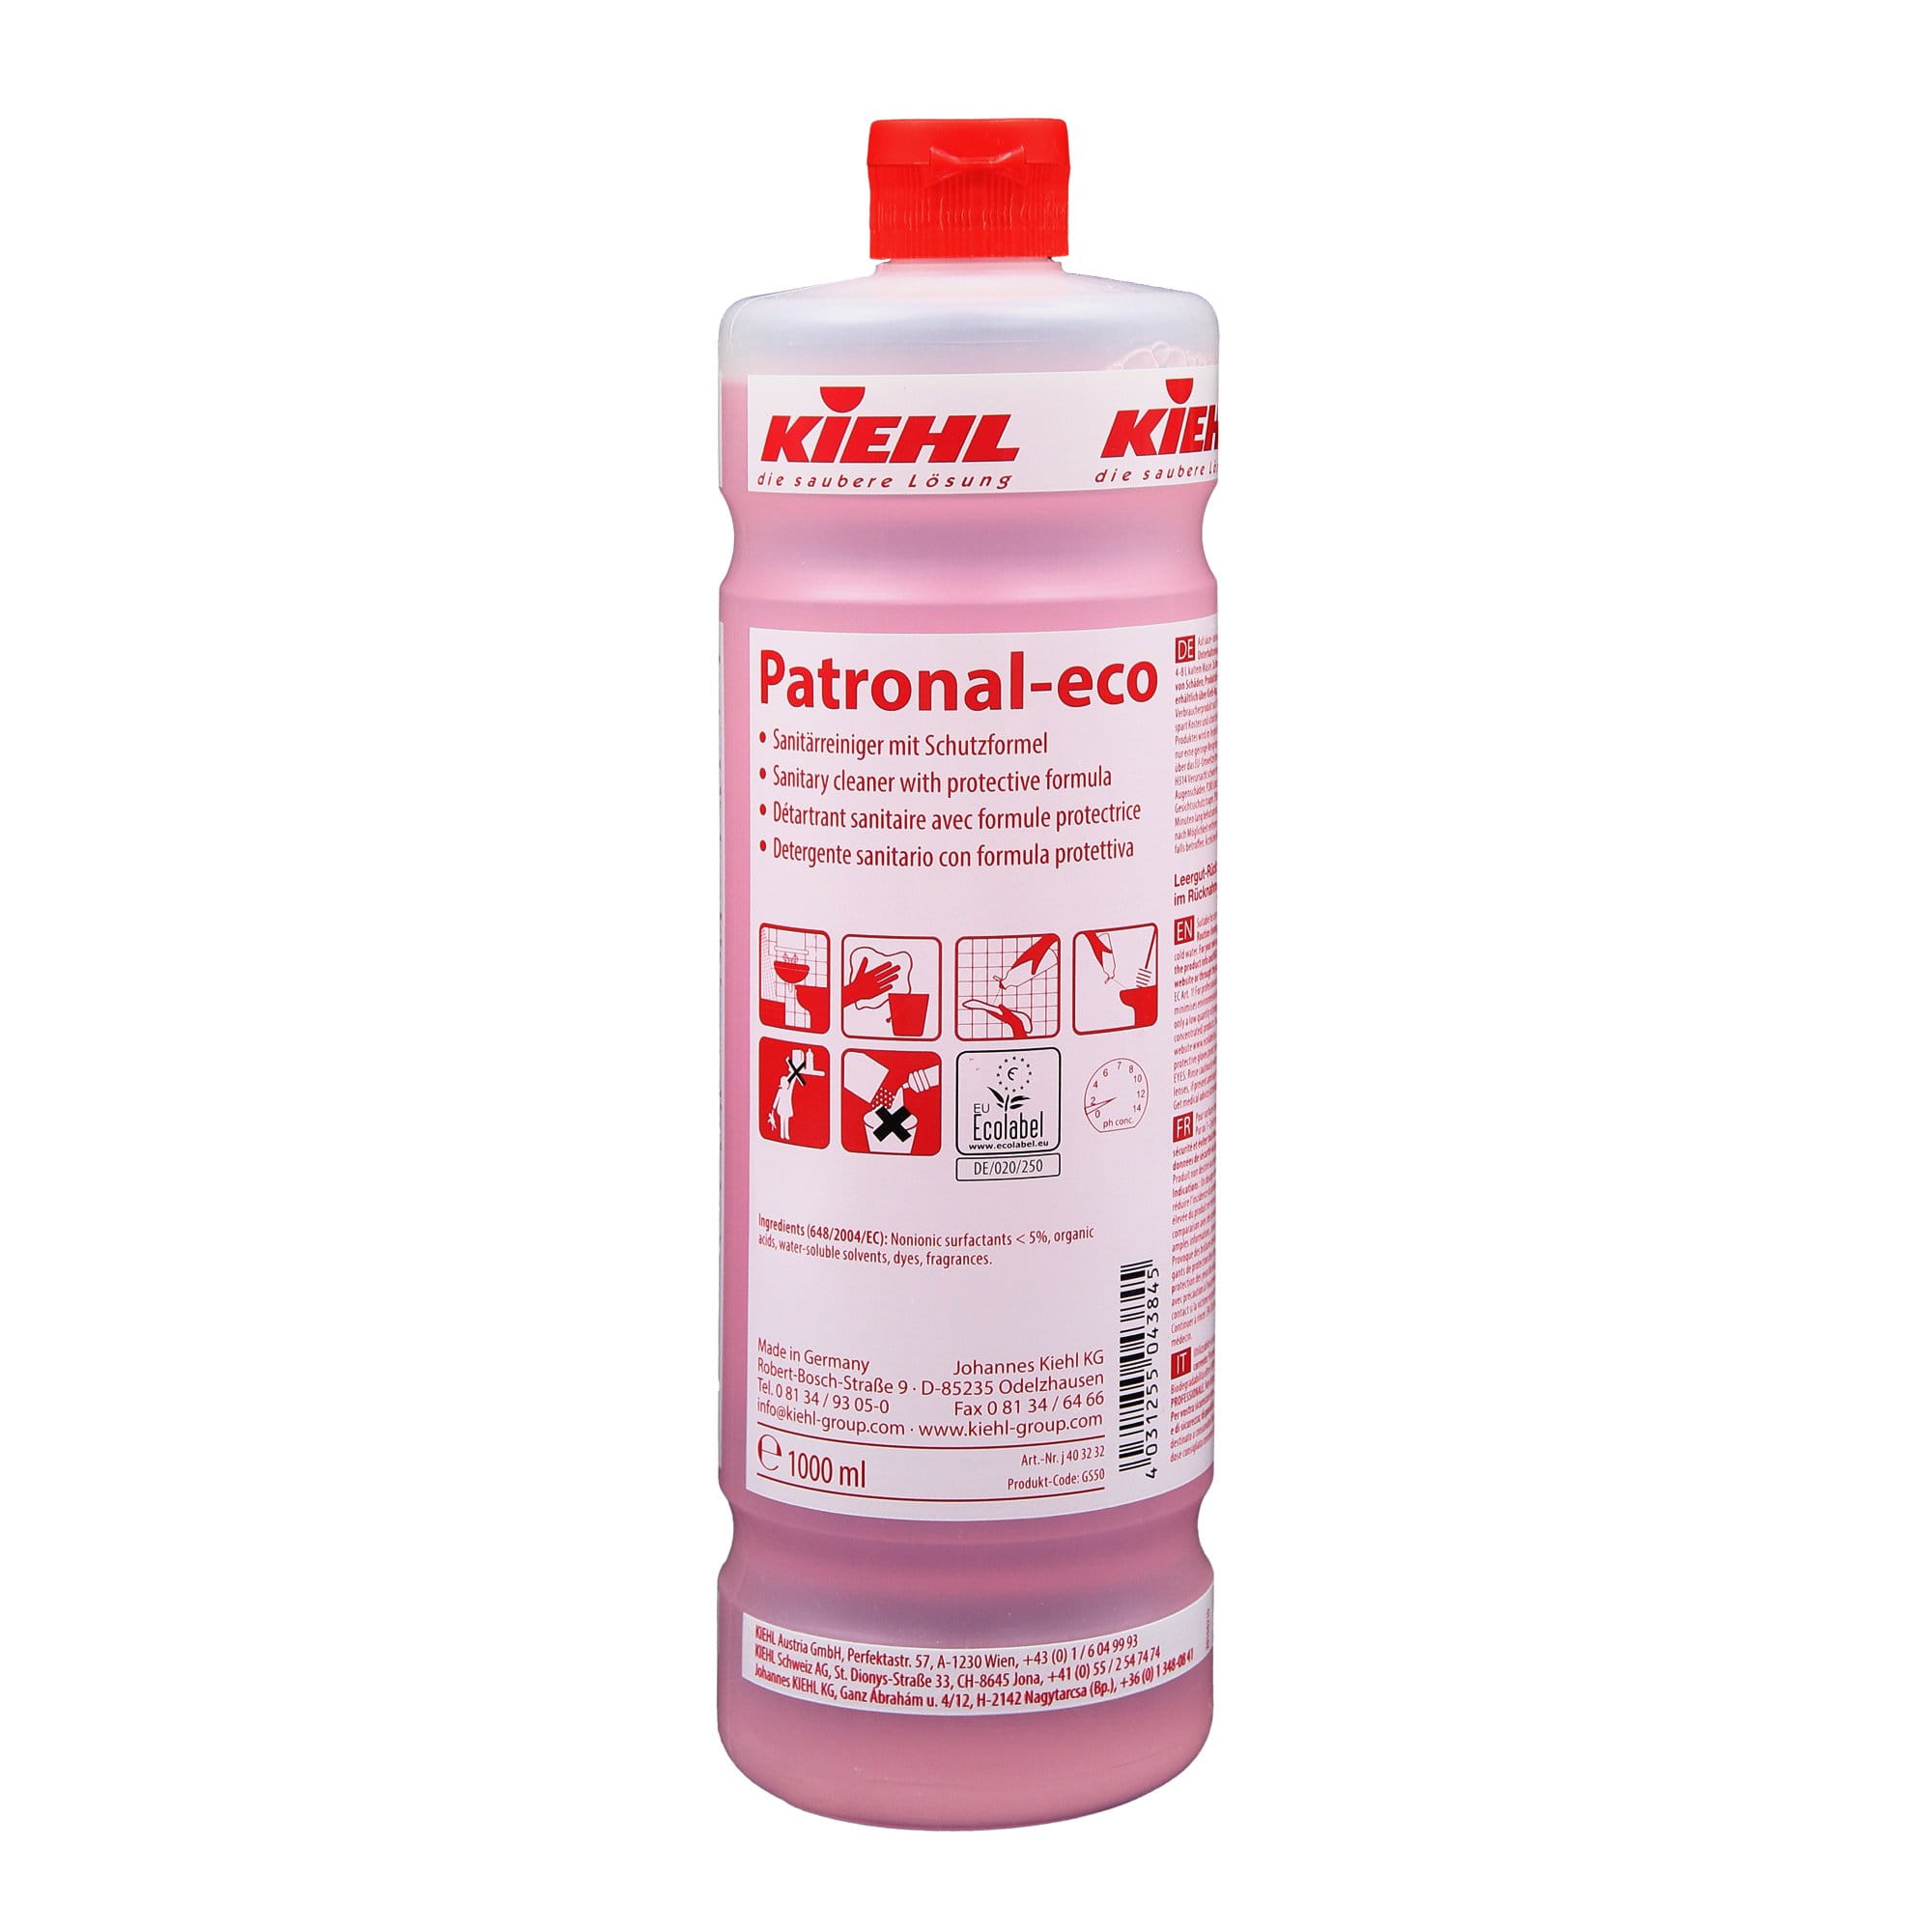 Kiehl Patronal-eco Sanitärreiniger 1 Liter Flasche j403201_1